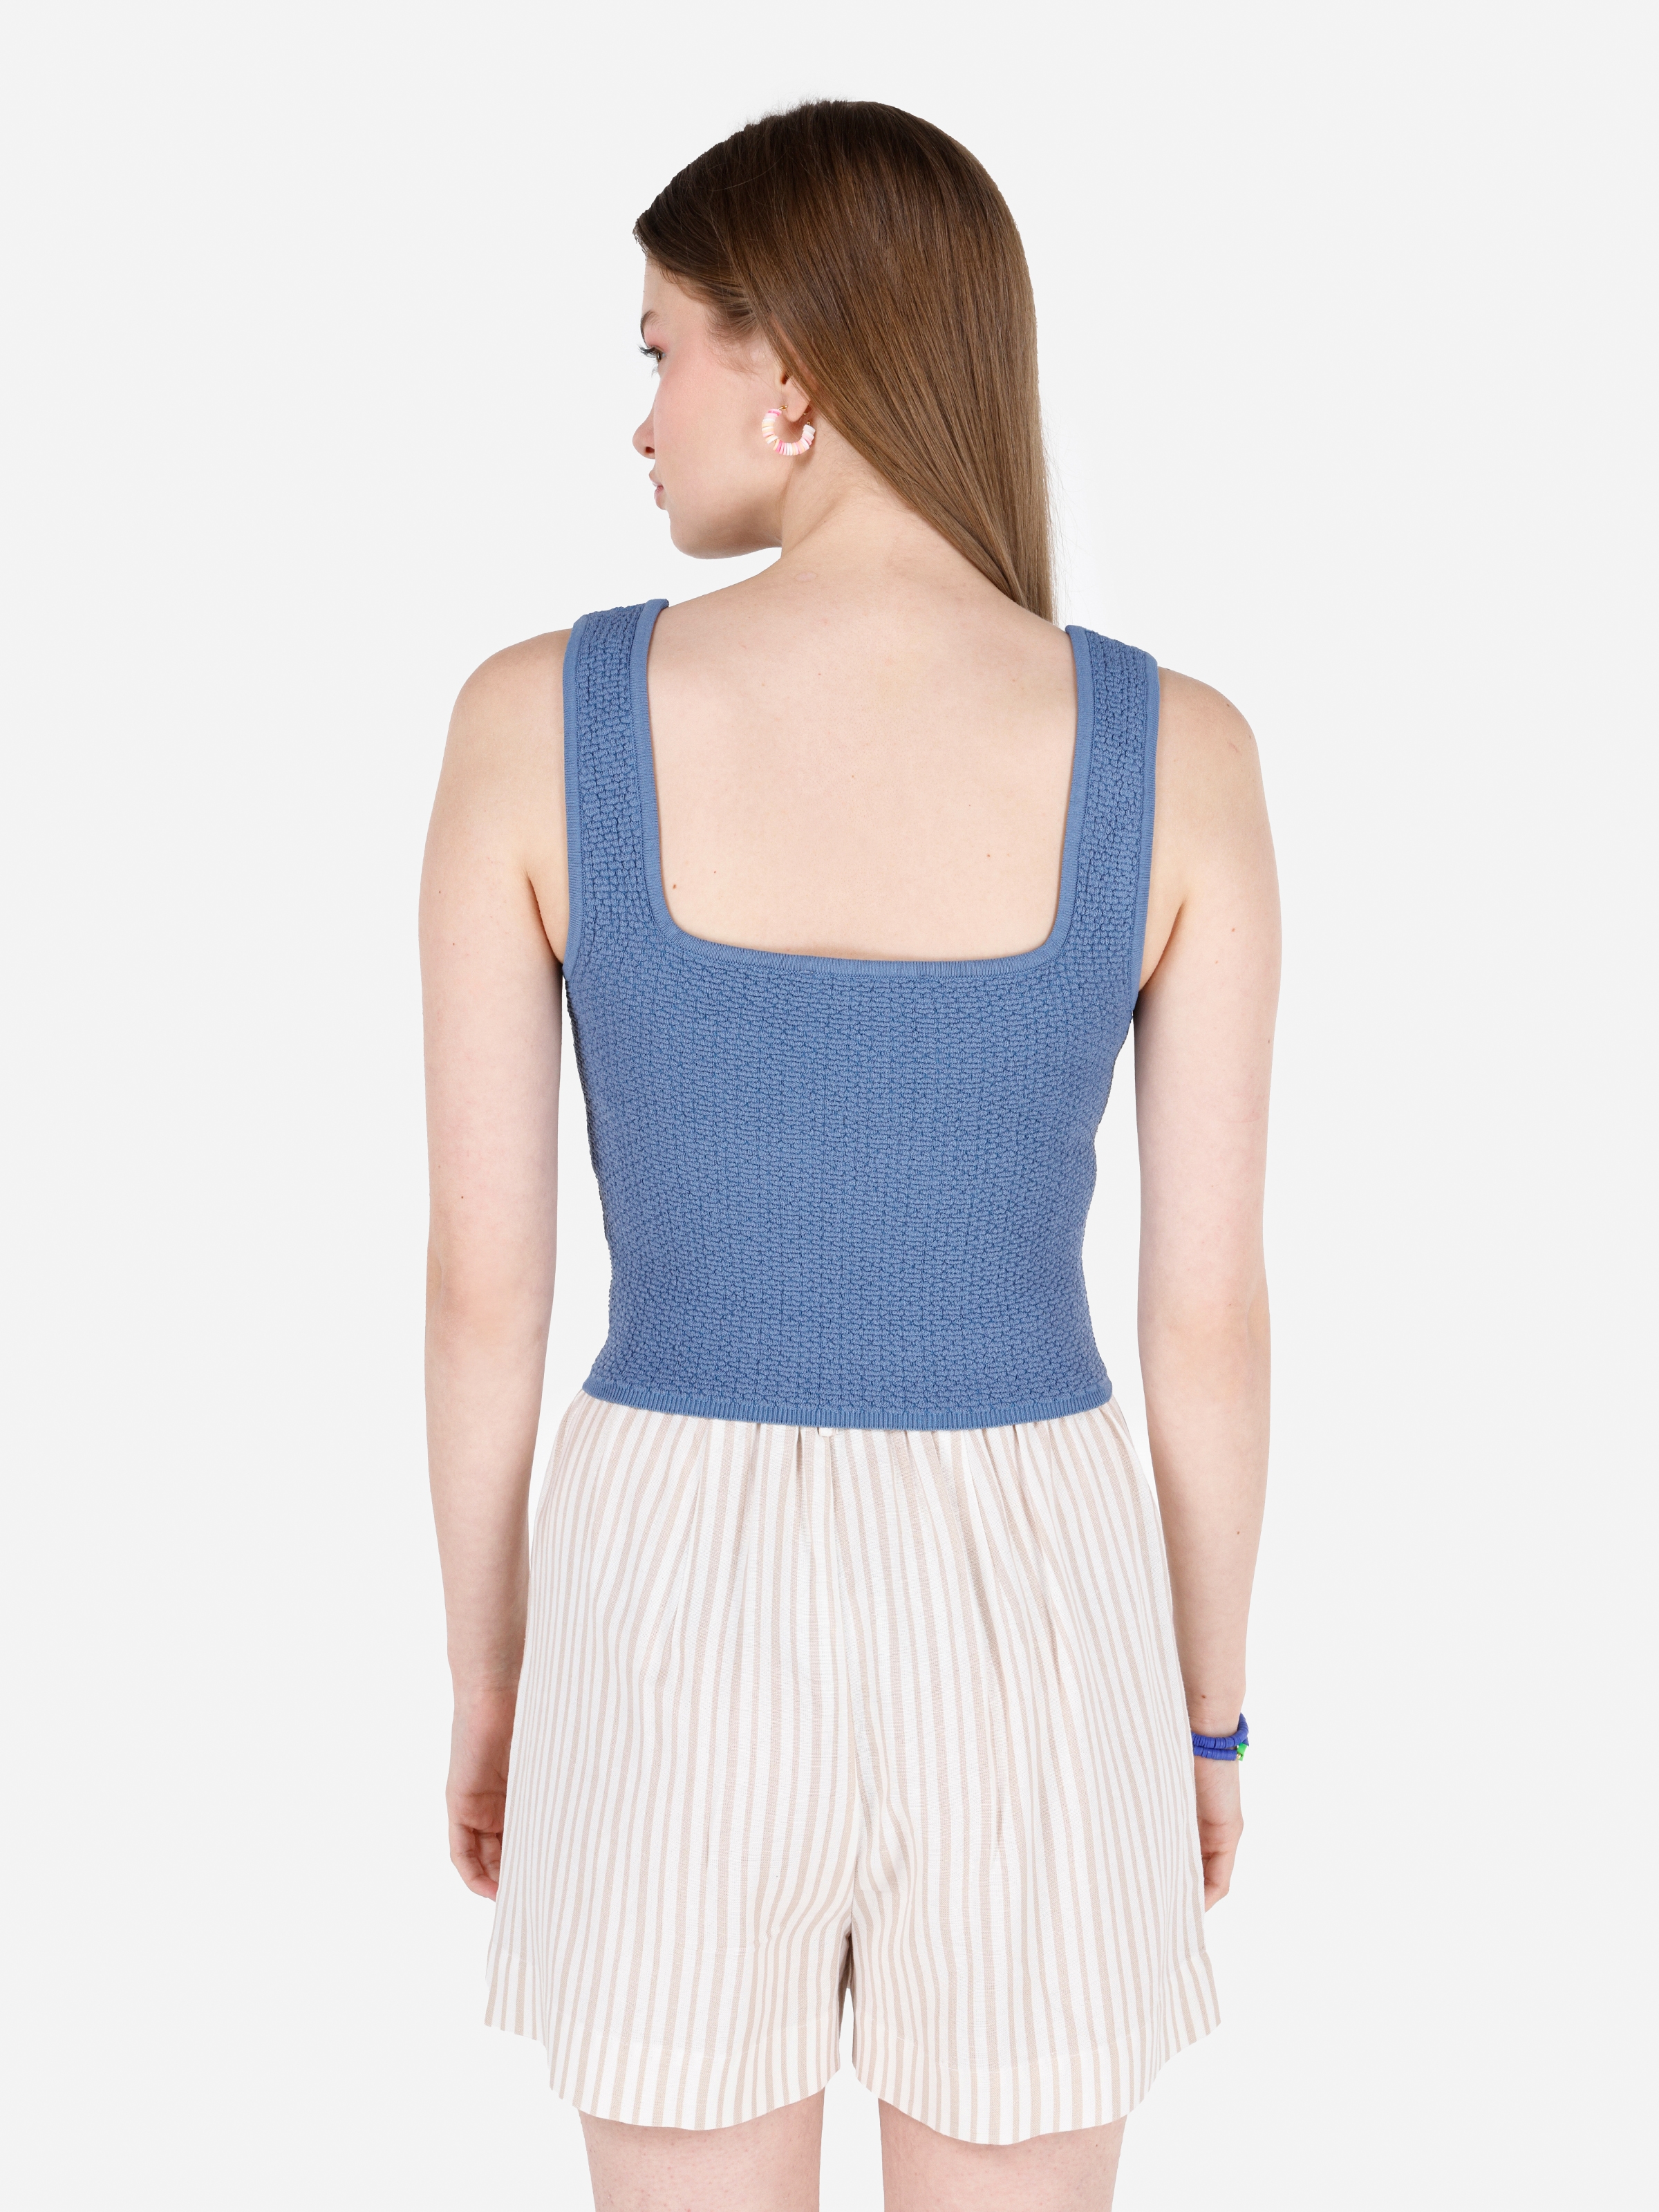 Показати інформацію про  светр із коротким рукавом Жіночий Блакитний  